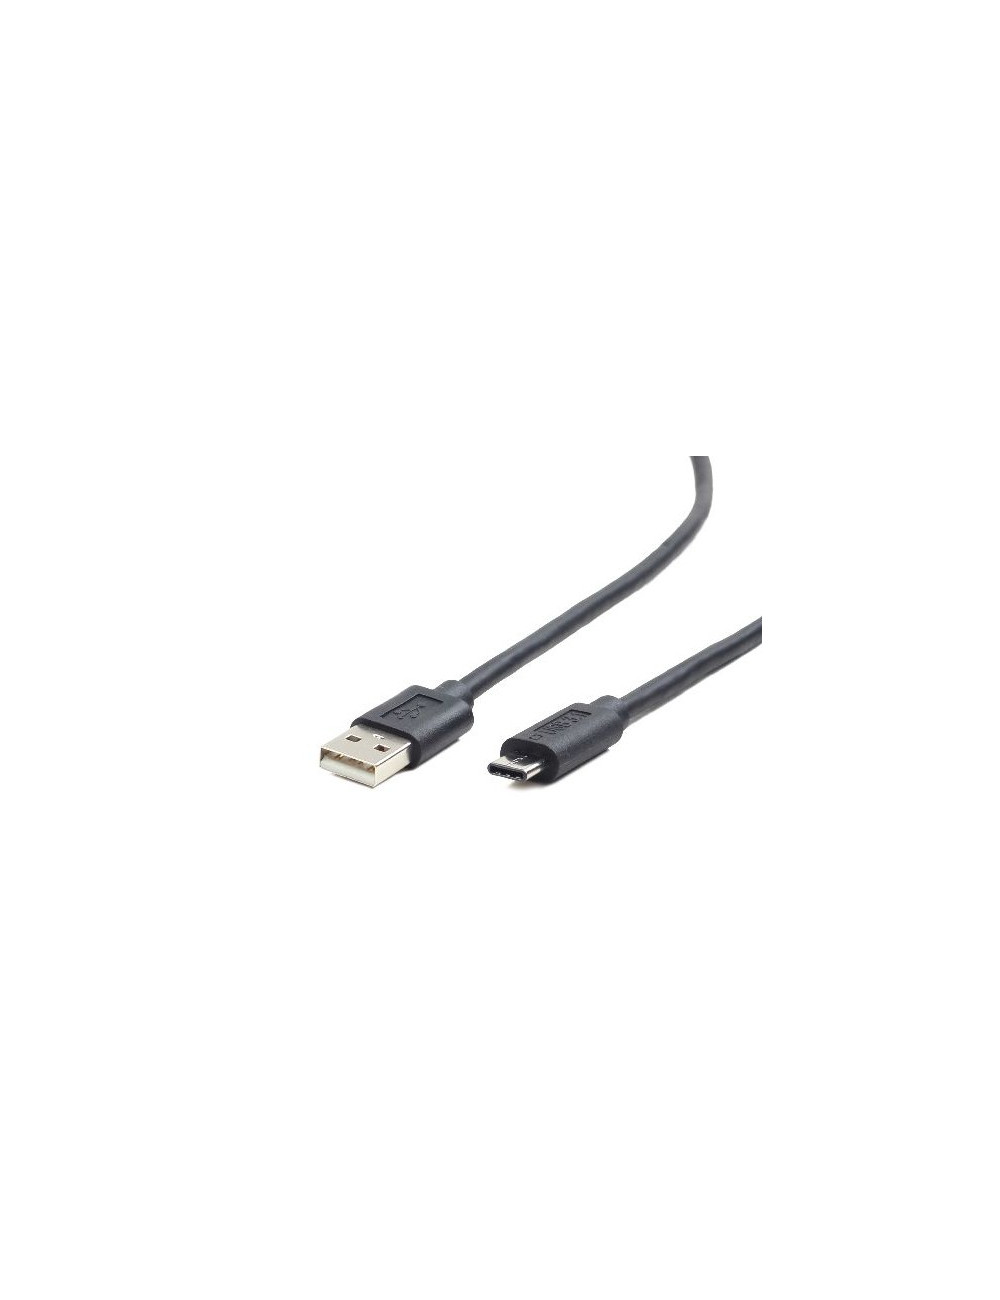 Cablexpert CCP-USB2-AMCM-1M USB 2.0 AM to Type-C cable (AM/CM), 1 m